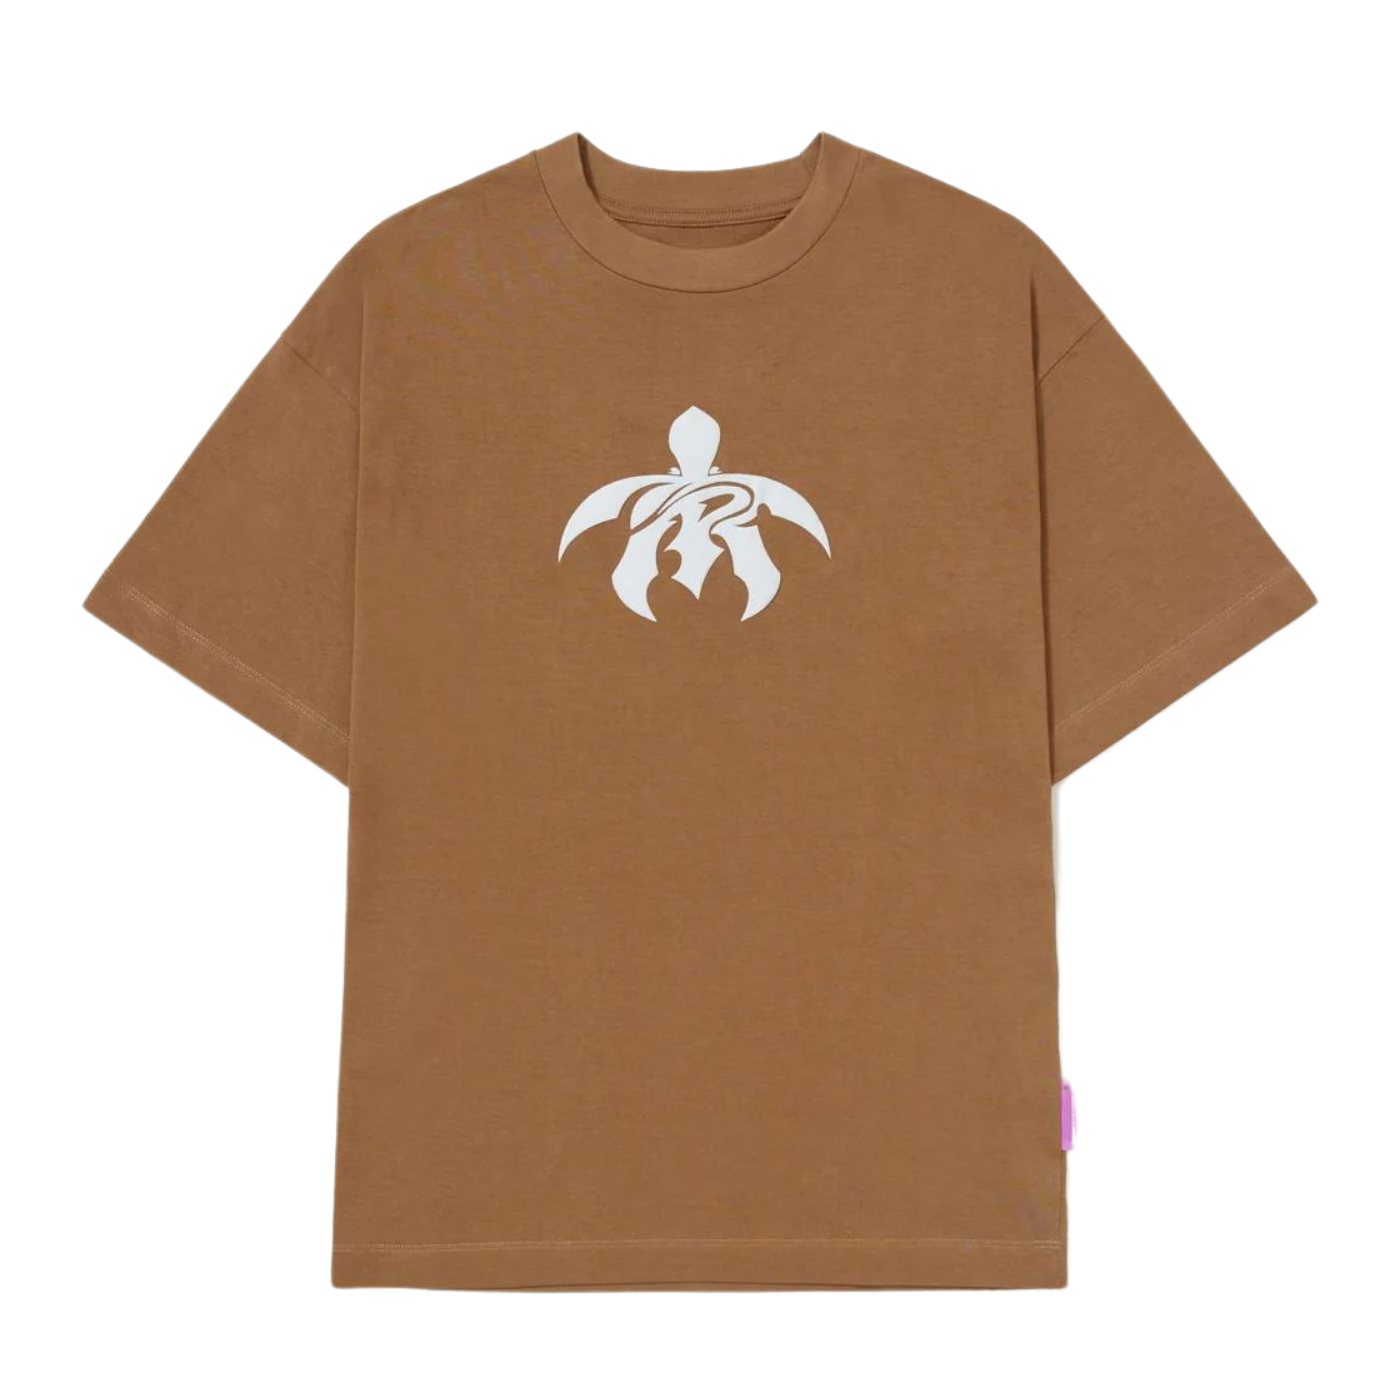 Camiseta Piet Tartaruga Brown